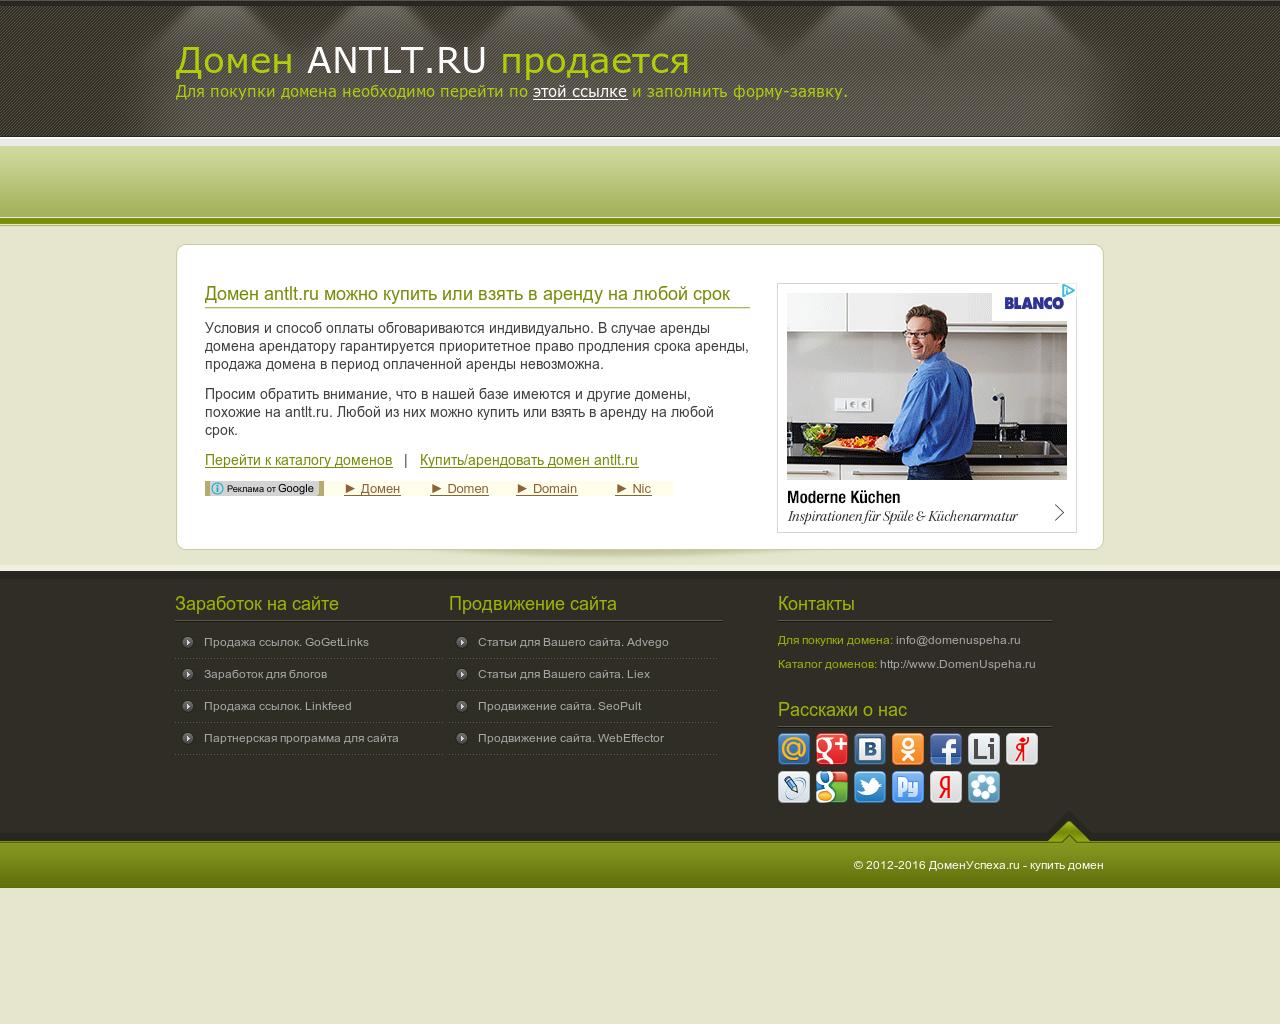 Изображение сайта antlt.ru в разрешении 1280x1024